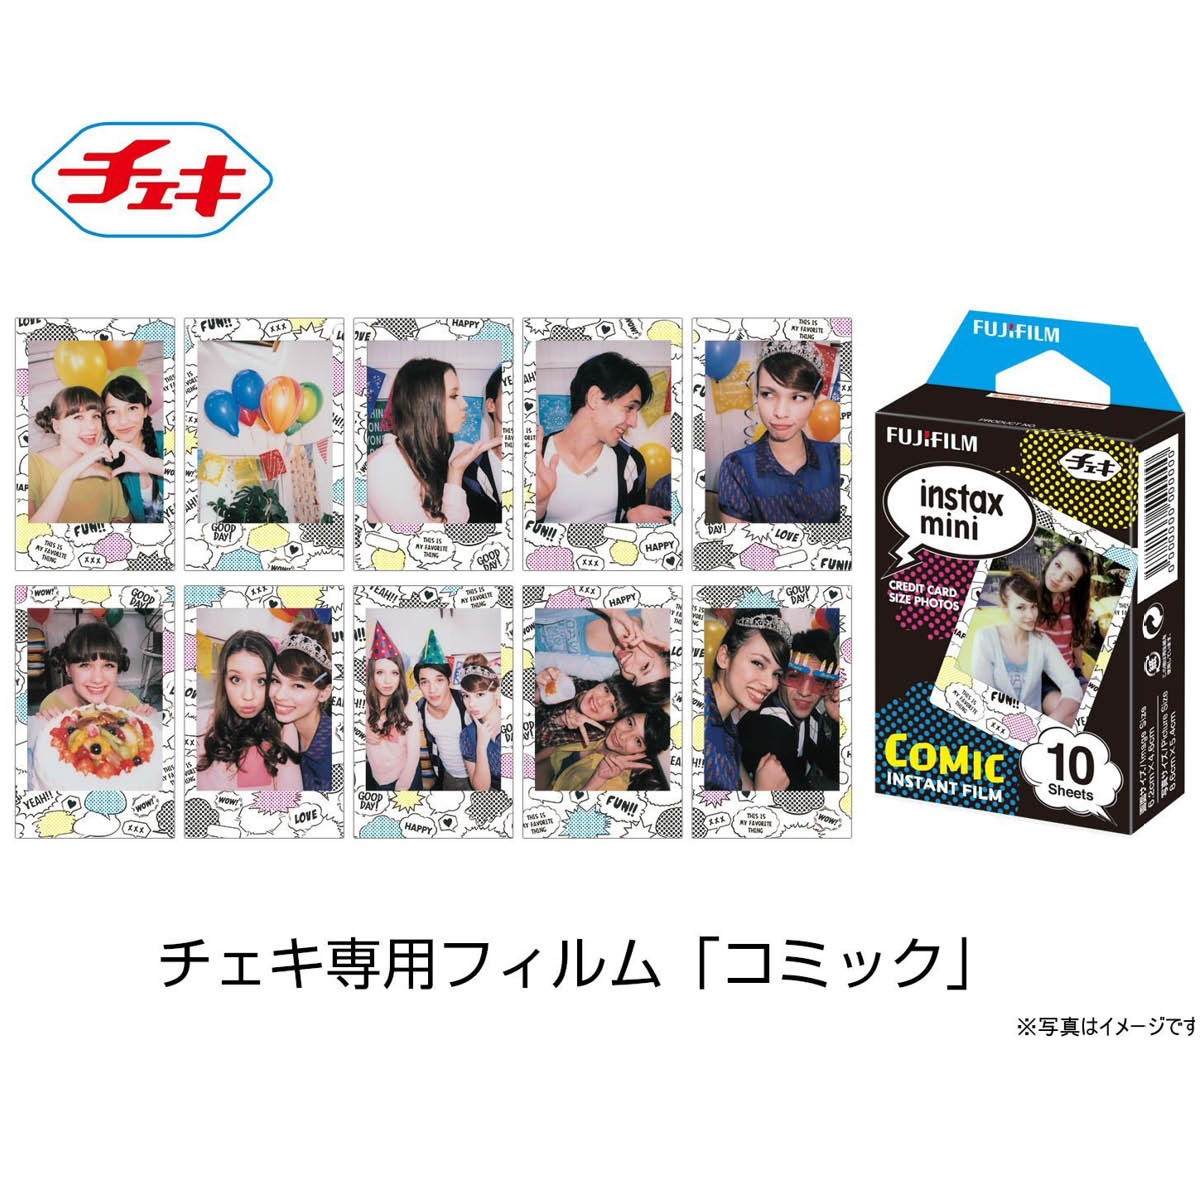 Fujifilm Instax Mini Comic Film